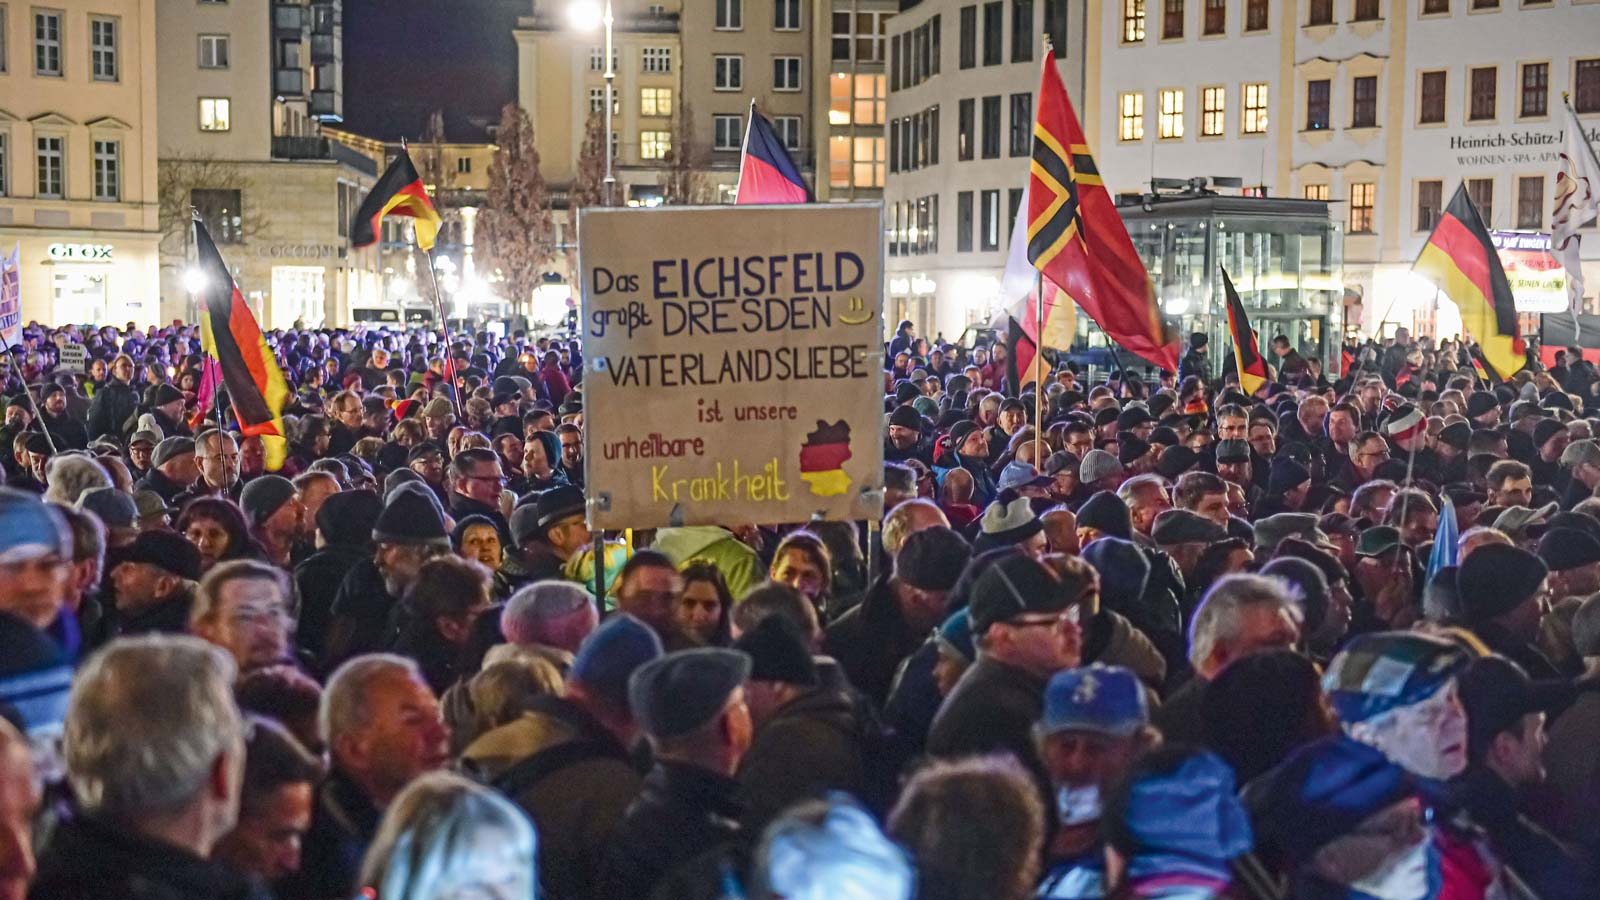 Anhänger der rechtsextremen, islamfeindlichen PEGIDA-Bewegung am 17. Februar 2020 auf dem Neumarkt in Dresden.